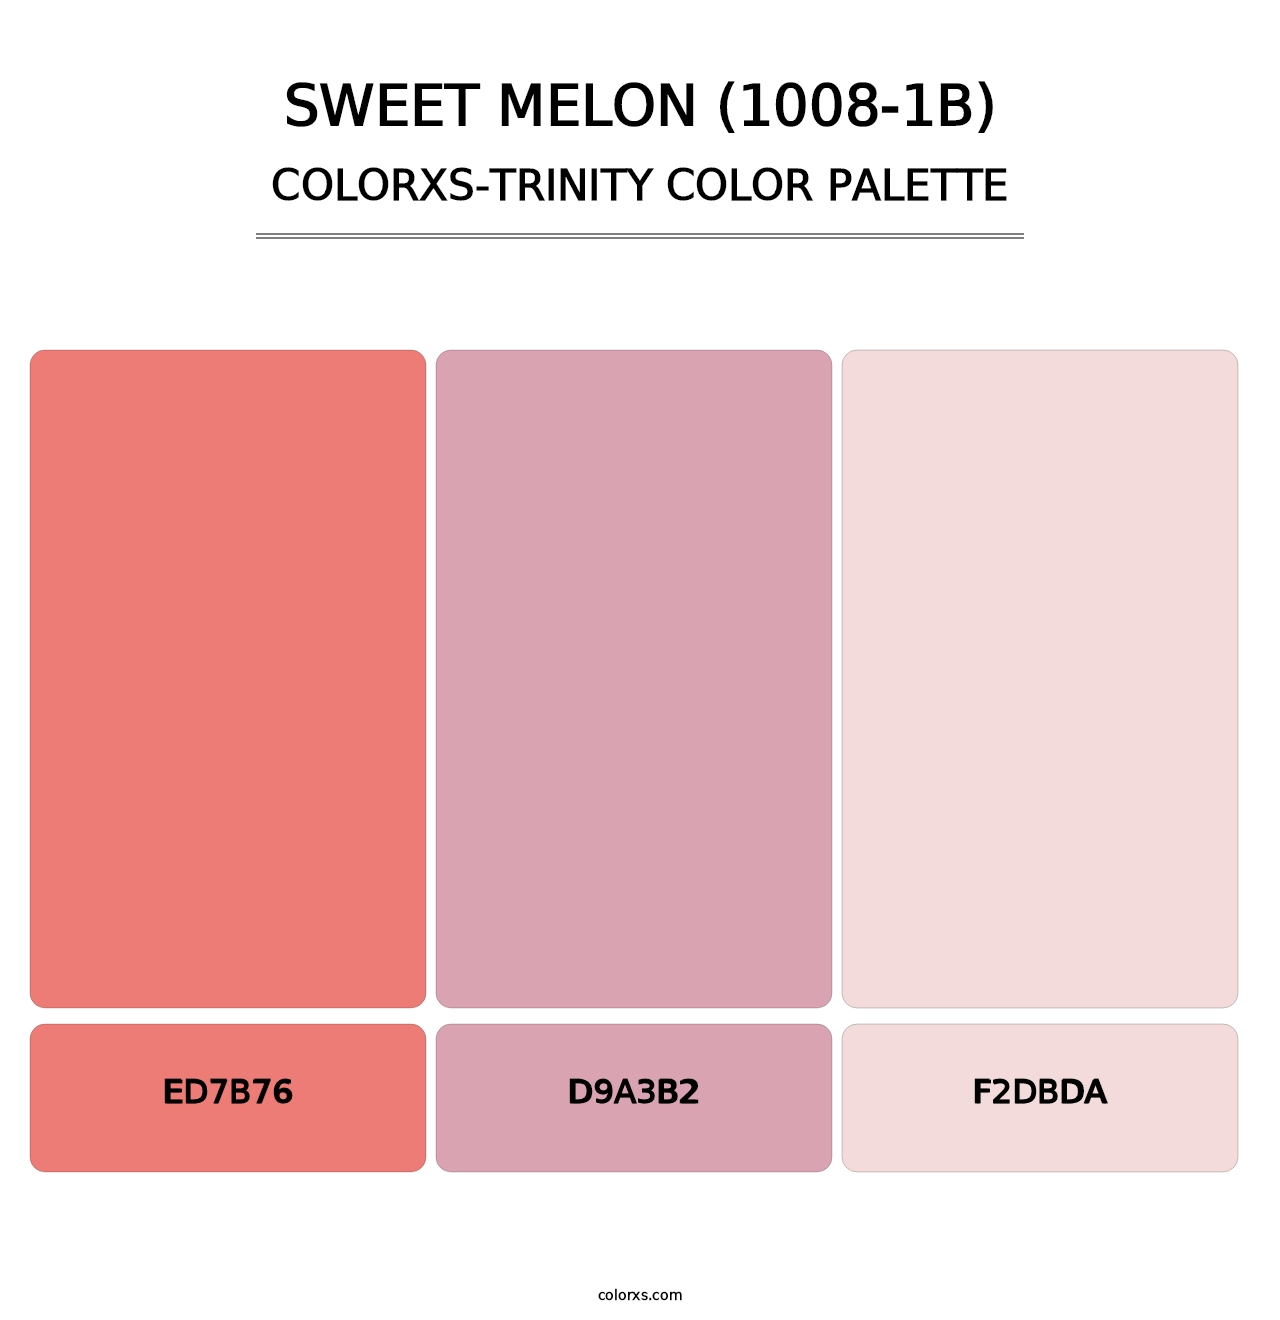 Sweet Melon (1008-1B) - Colorxs Trinity Palette